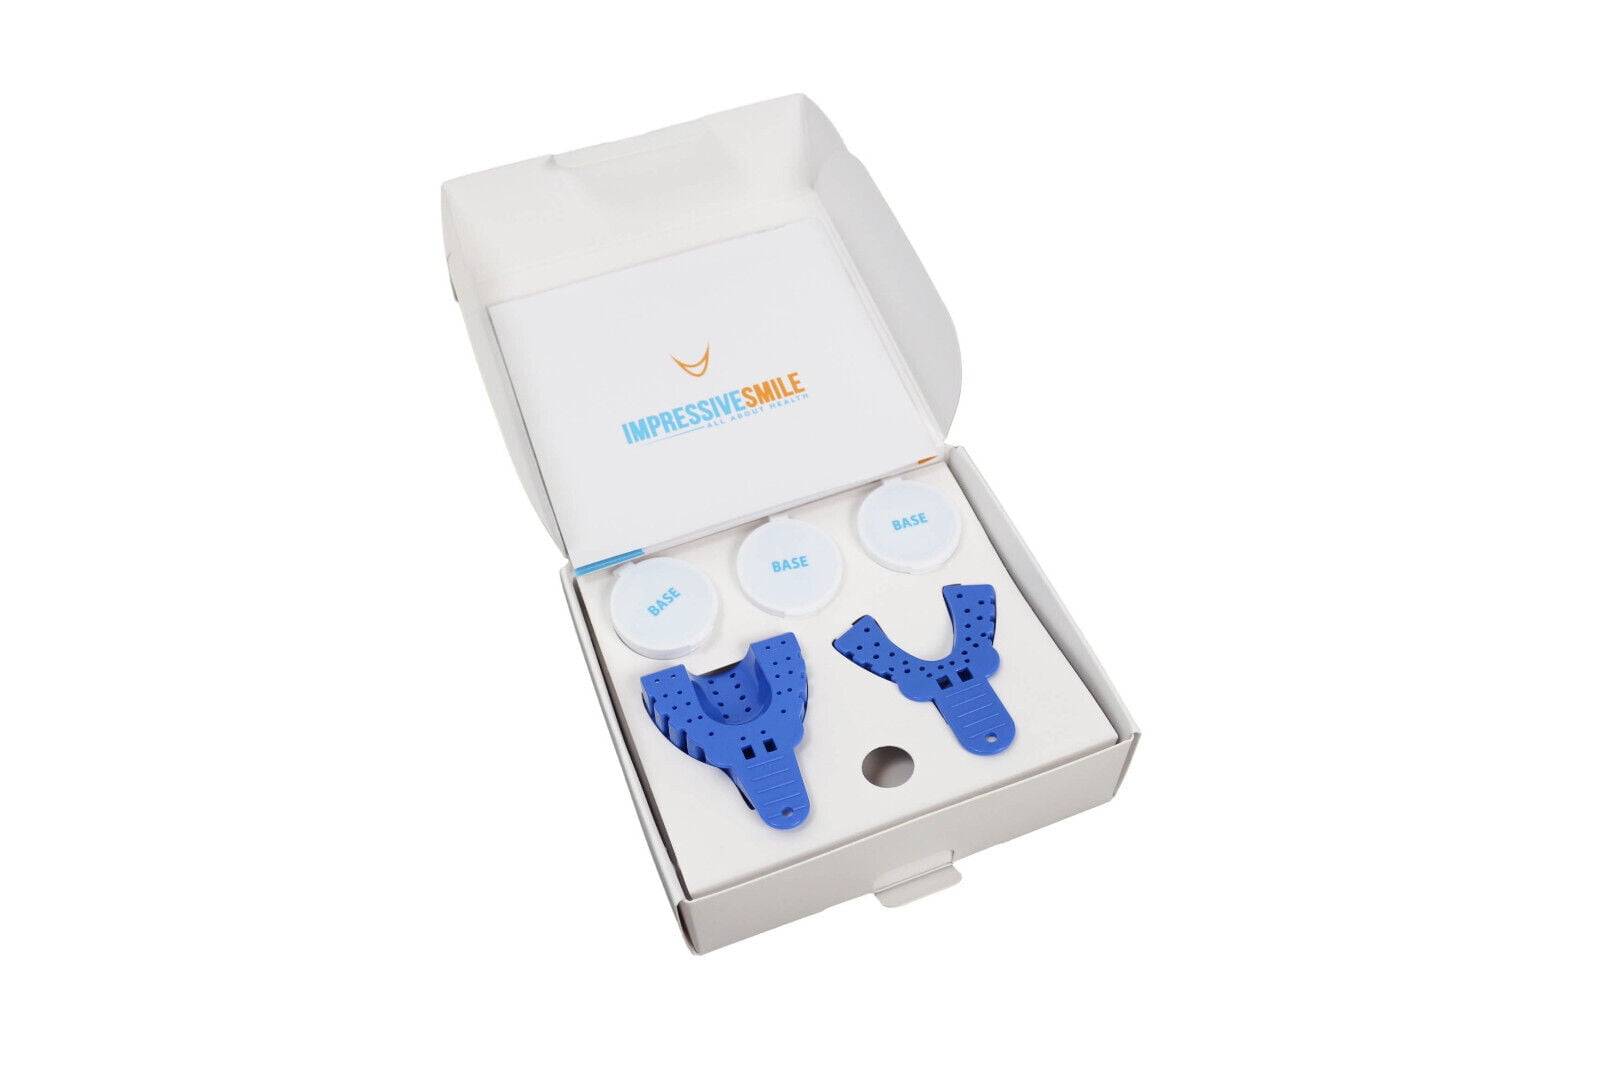 Dental Impression Kit for Hospital & Home Use 